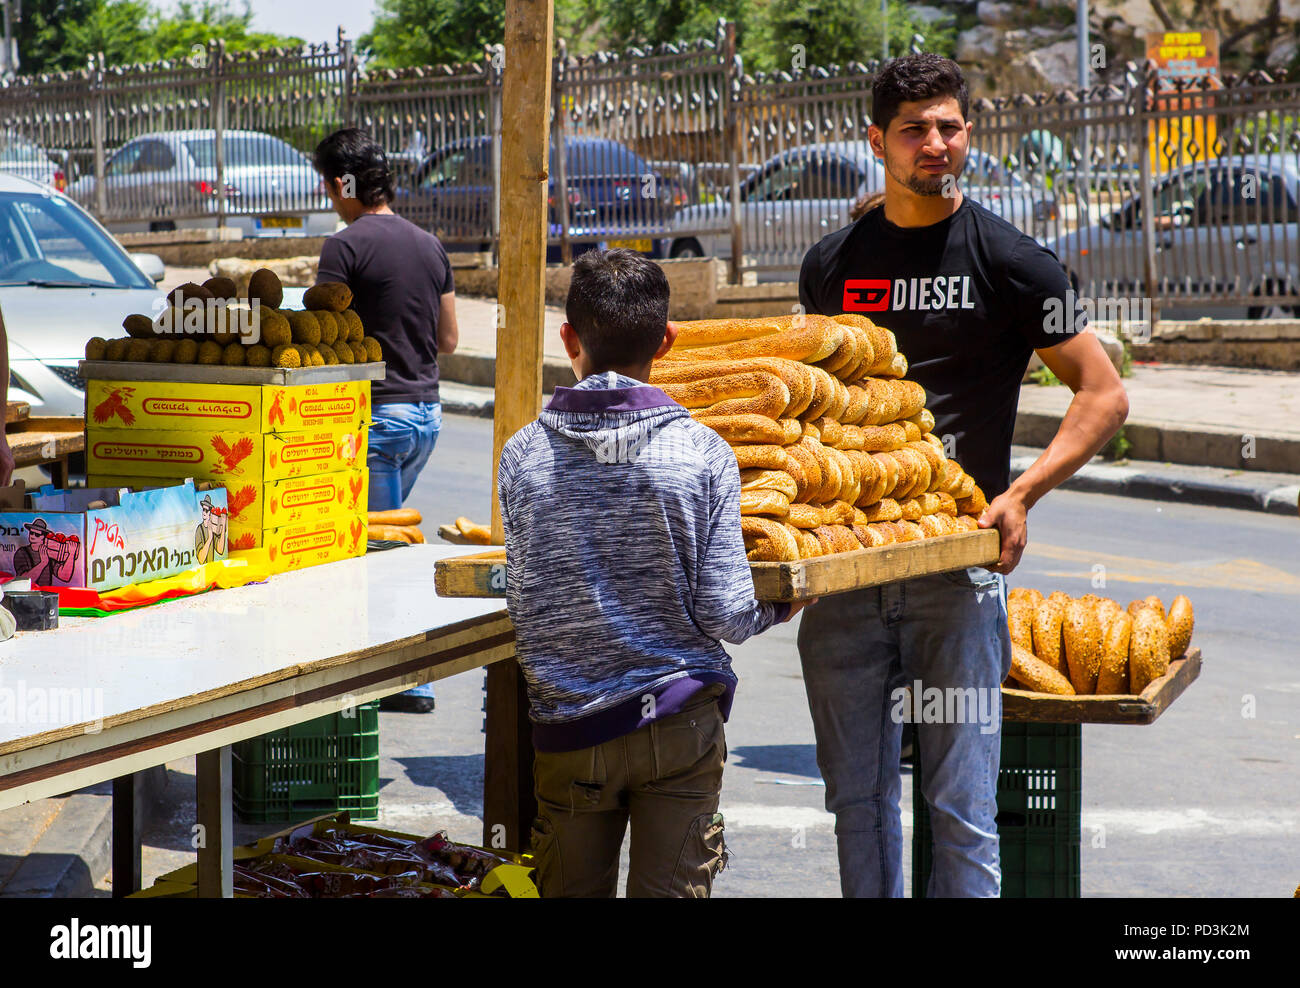 11 maggio 2018 un fornitore di pane alla giunzione occupato di Nablus Road e Sultan uleiman Street in arabo il Quartiere Musulmano di Gerusalemme Israele avvicinando t Foto Stock